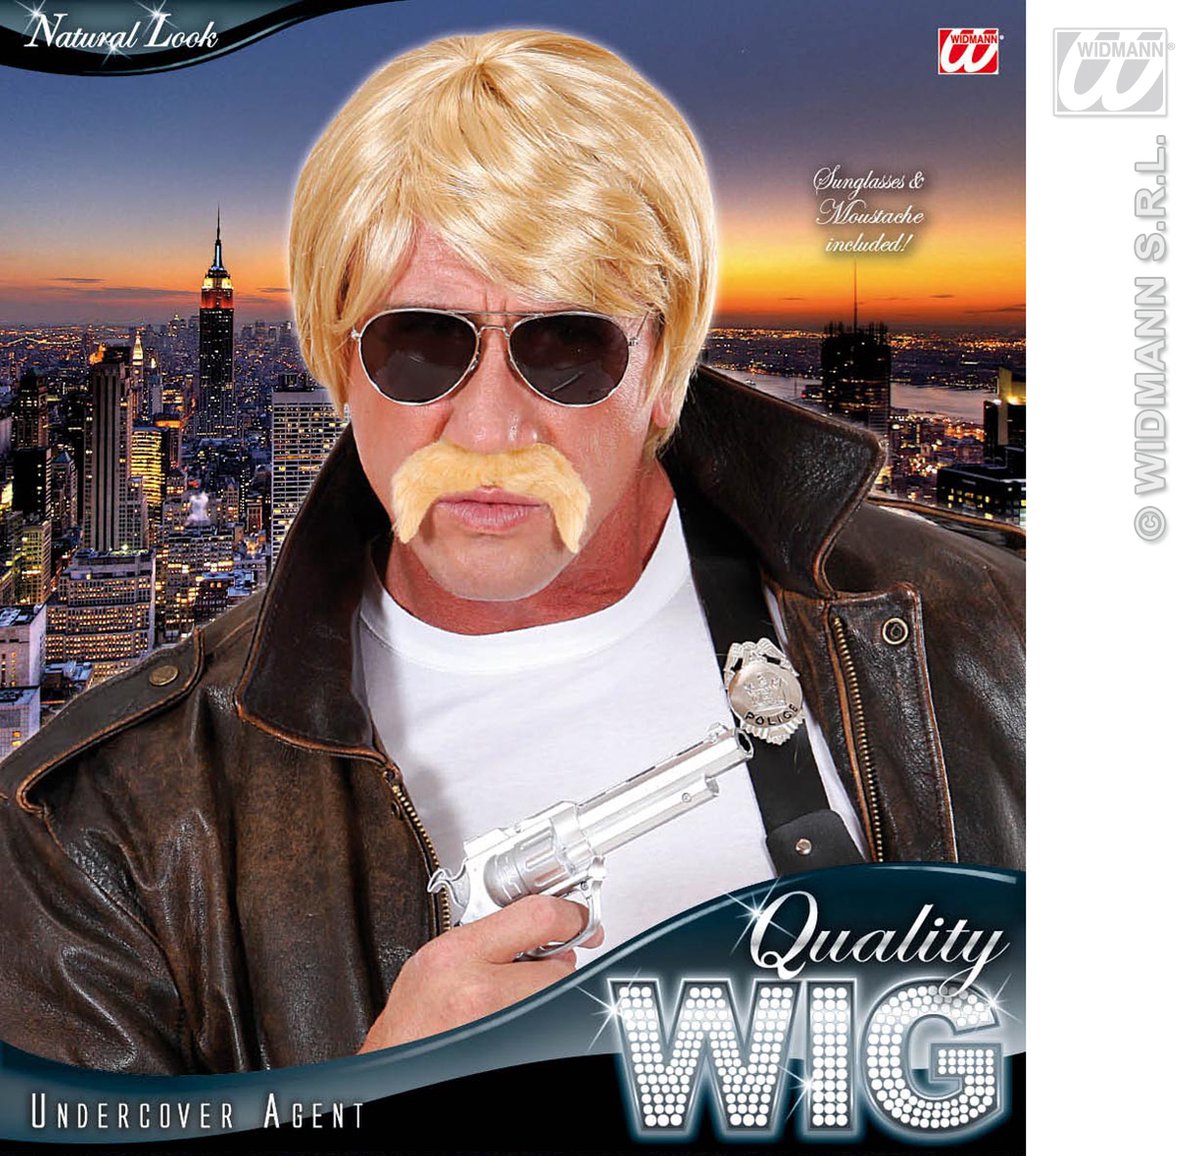 Faram Wig Perruque homme blonde avec moustache taille unique